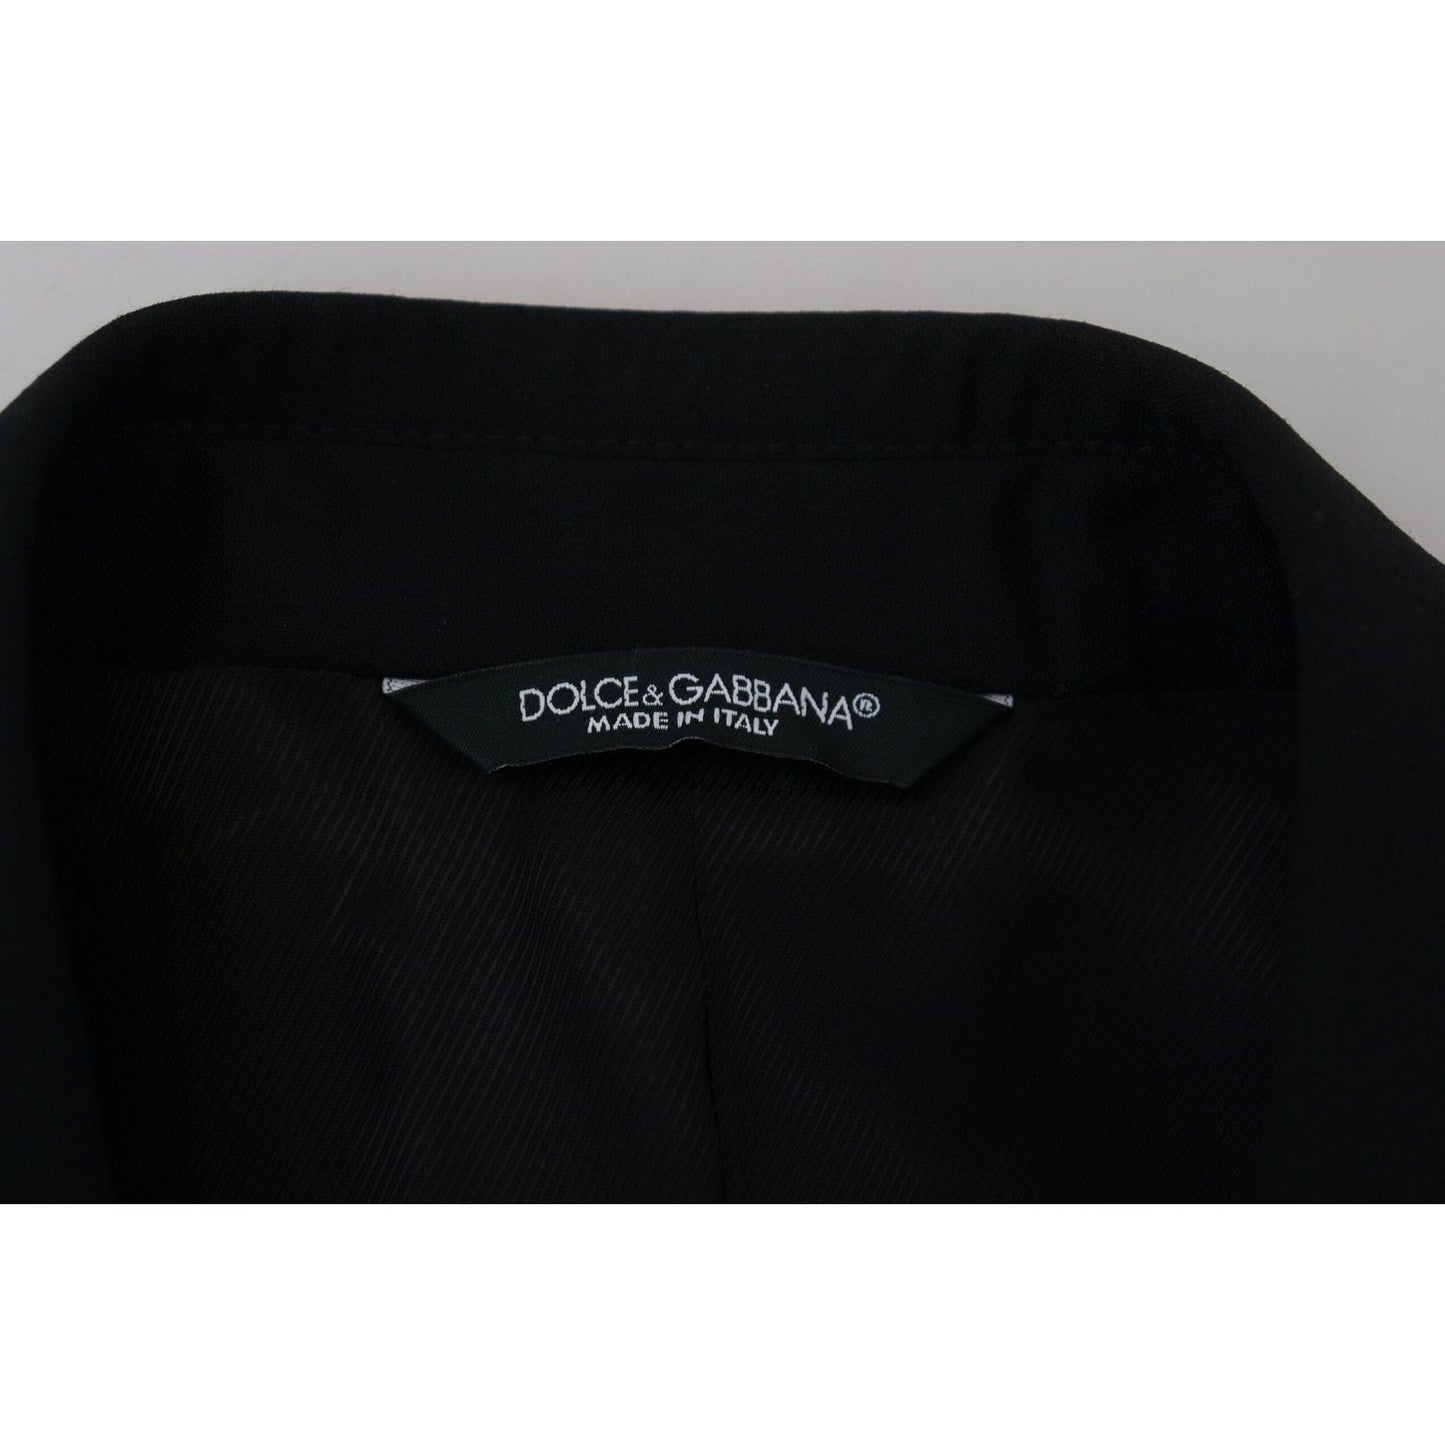 Dolce & Gabbana Elegant Martini Black Formal Blazer black-slim-fit-formal-martini-blazer-1